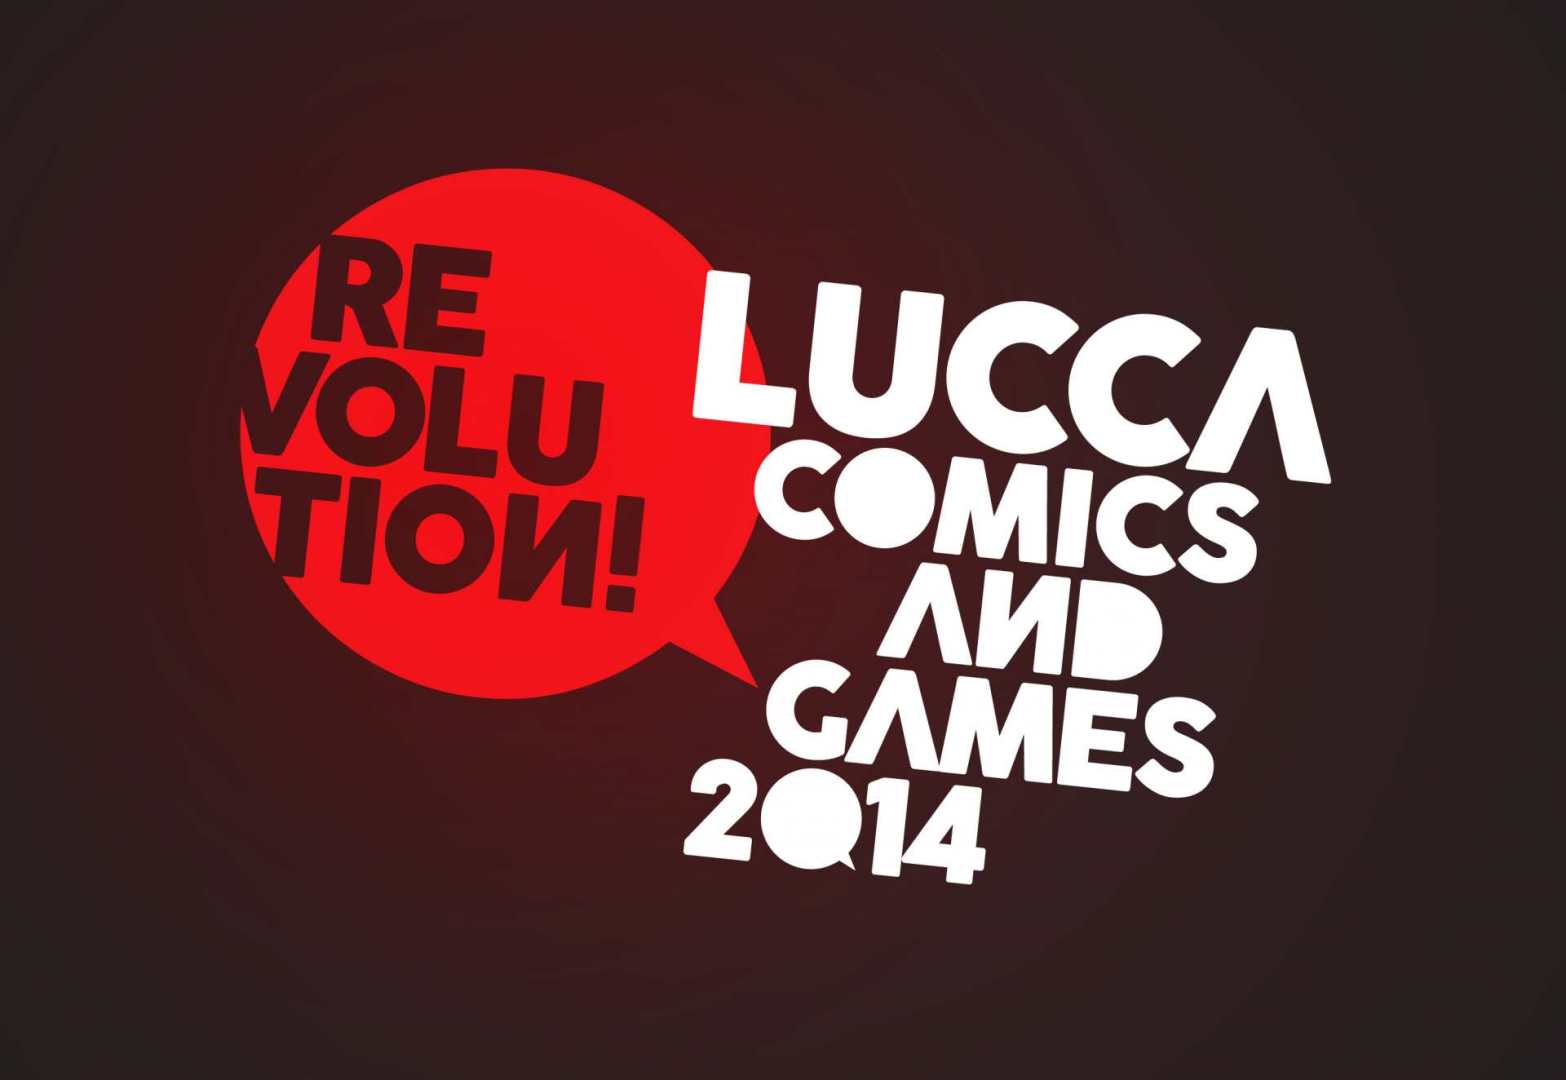 lucca-comics-and-games-2014-programma-ecco-gli-eventi-e-gli-ospiti-principali